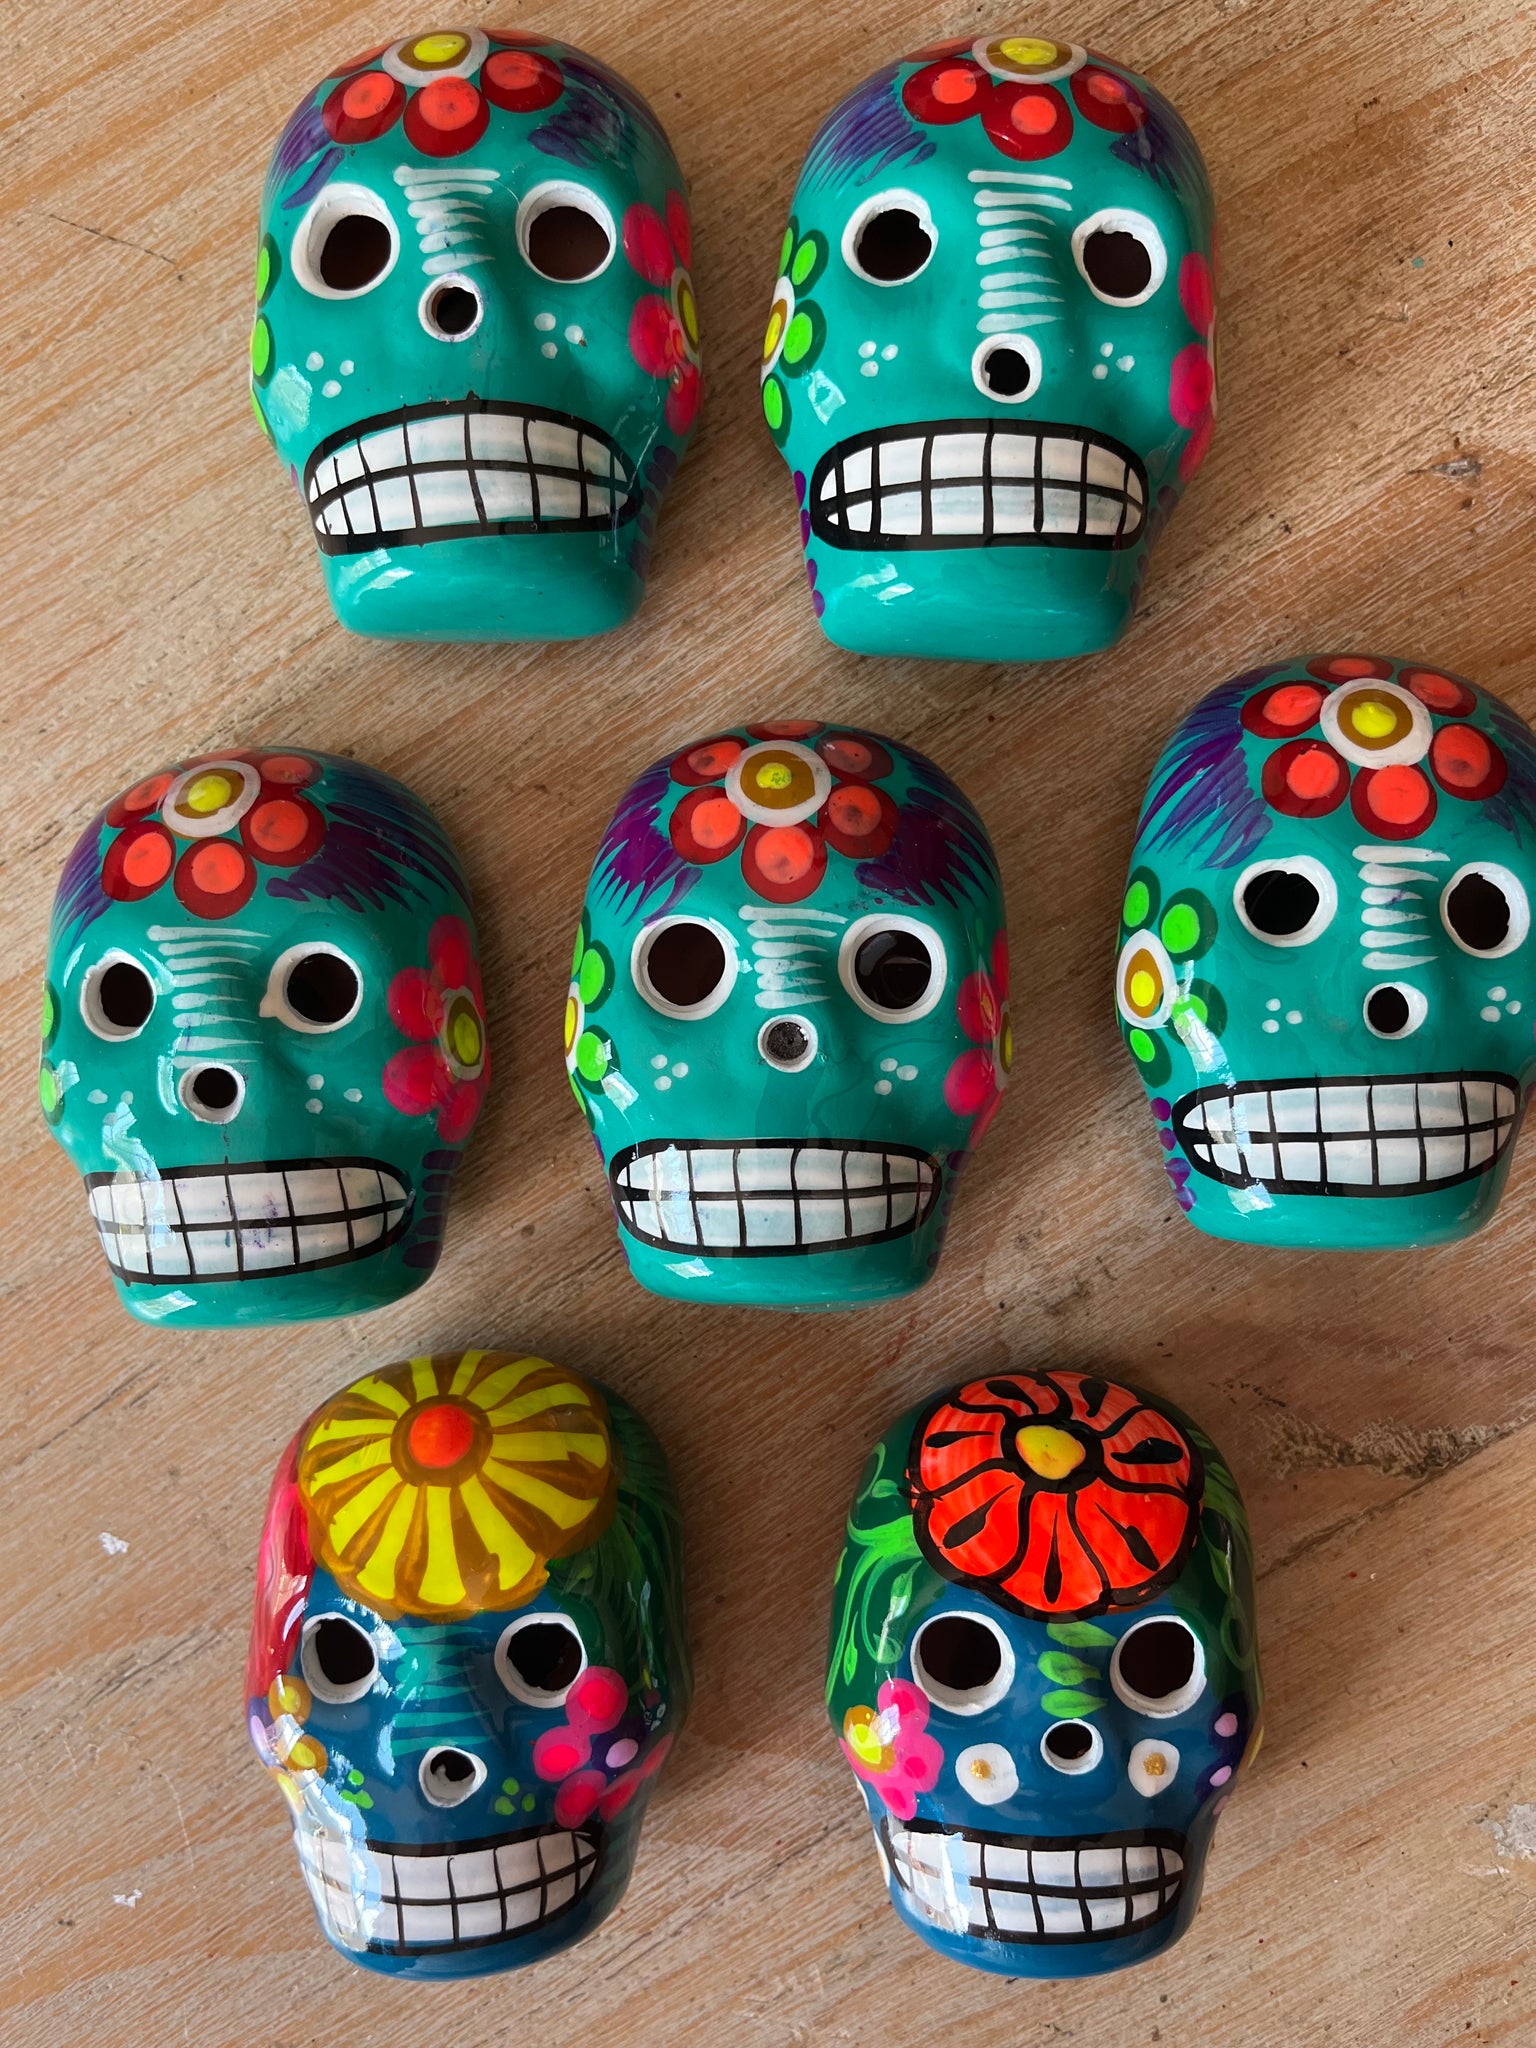 Calavera Ceramic Magnet Skulls